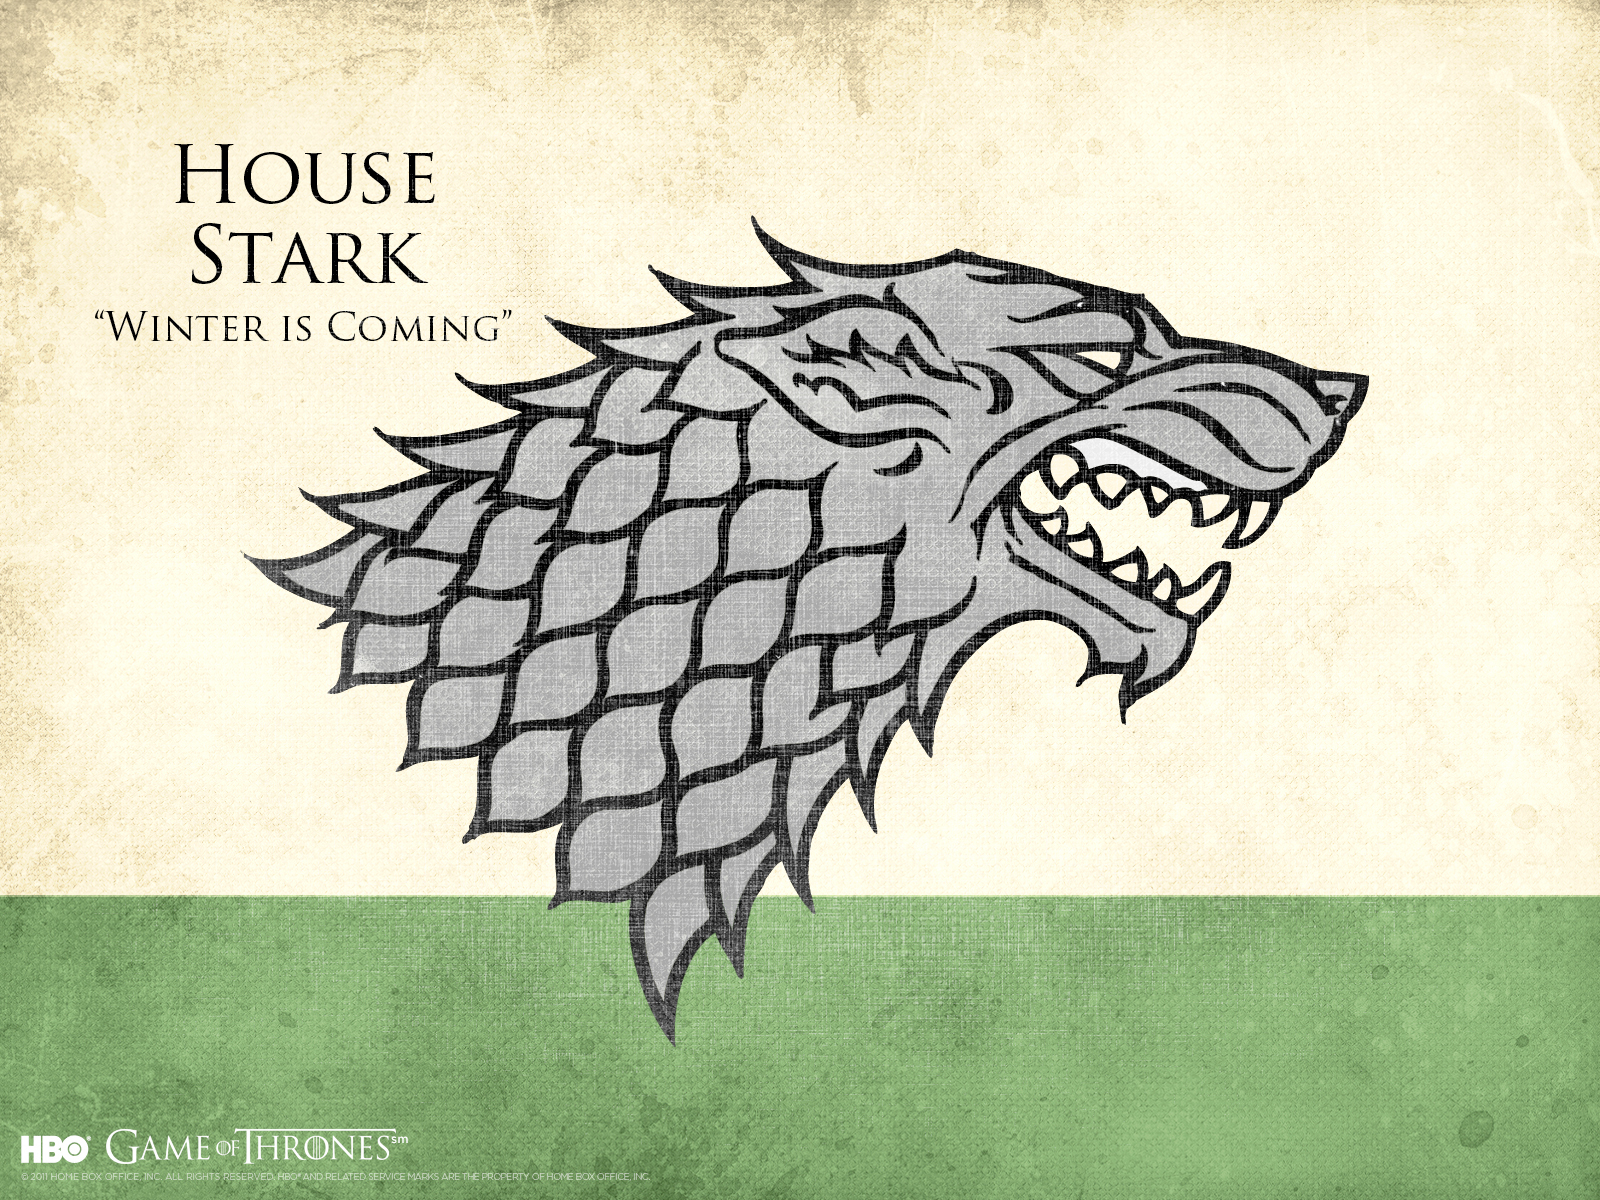 House-Stark-game-of-thrones-21729442-1600-1200.jpg